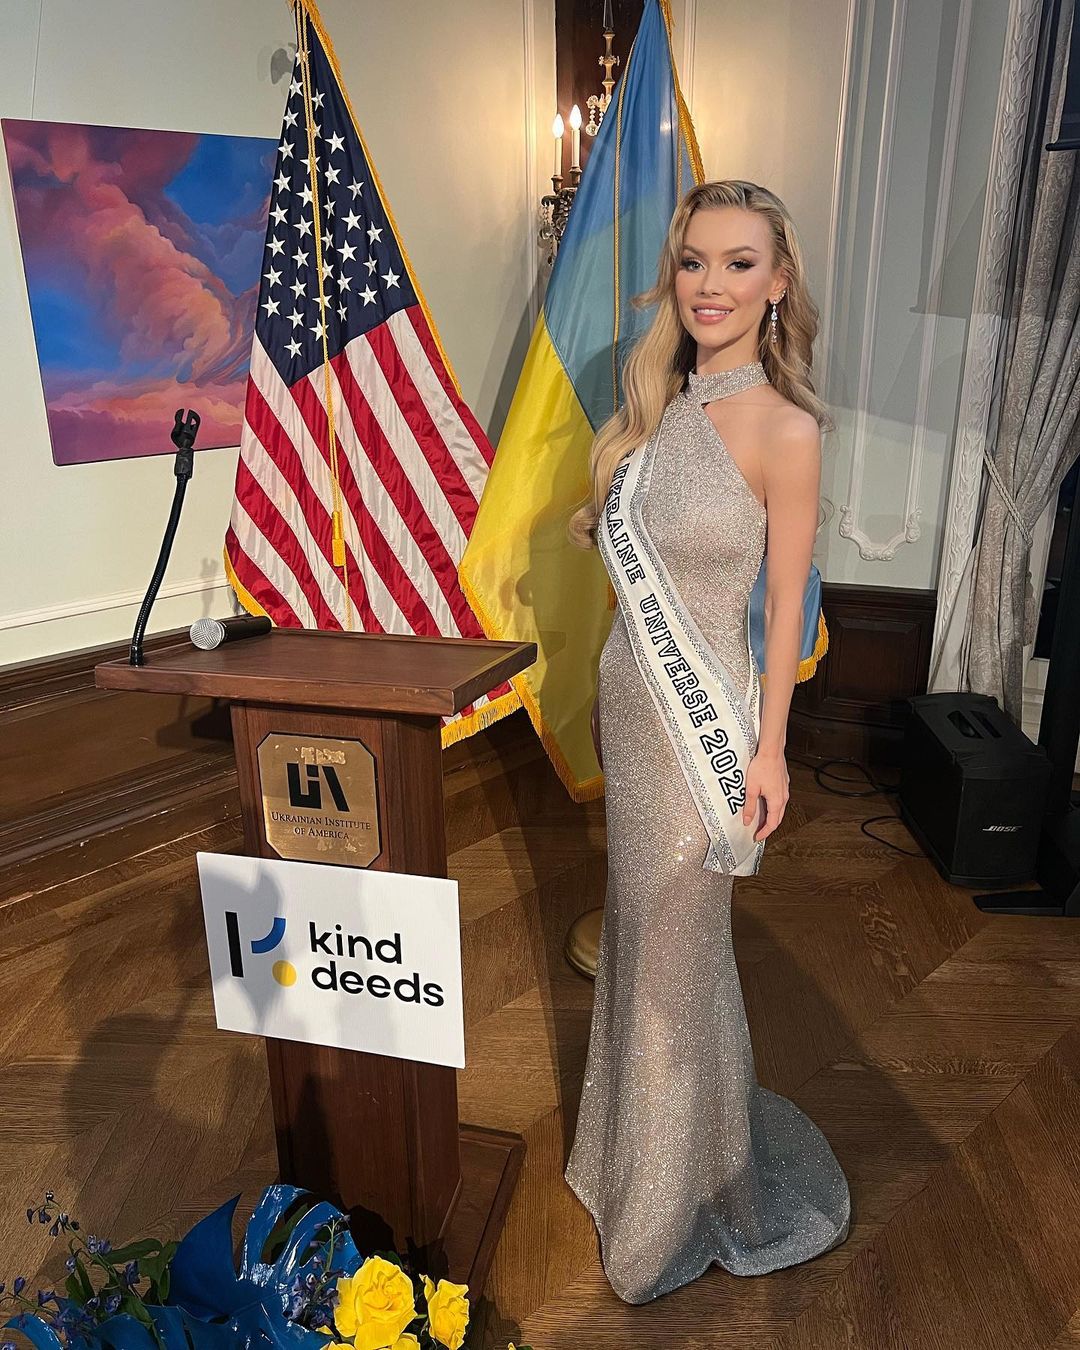 "Міс Україна Всесвіт" продала костюм "Воїн світла" за шалені гроші: на що витратила кошти